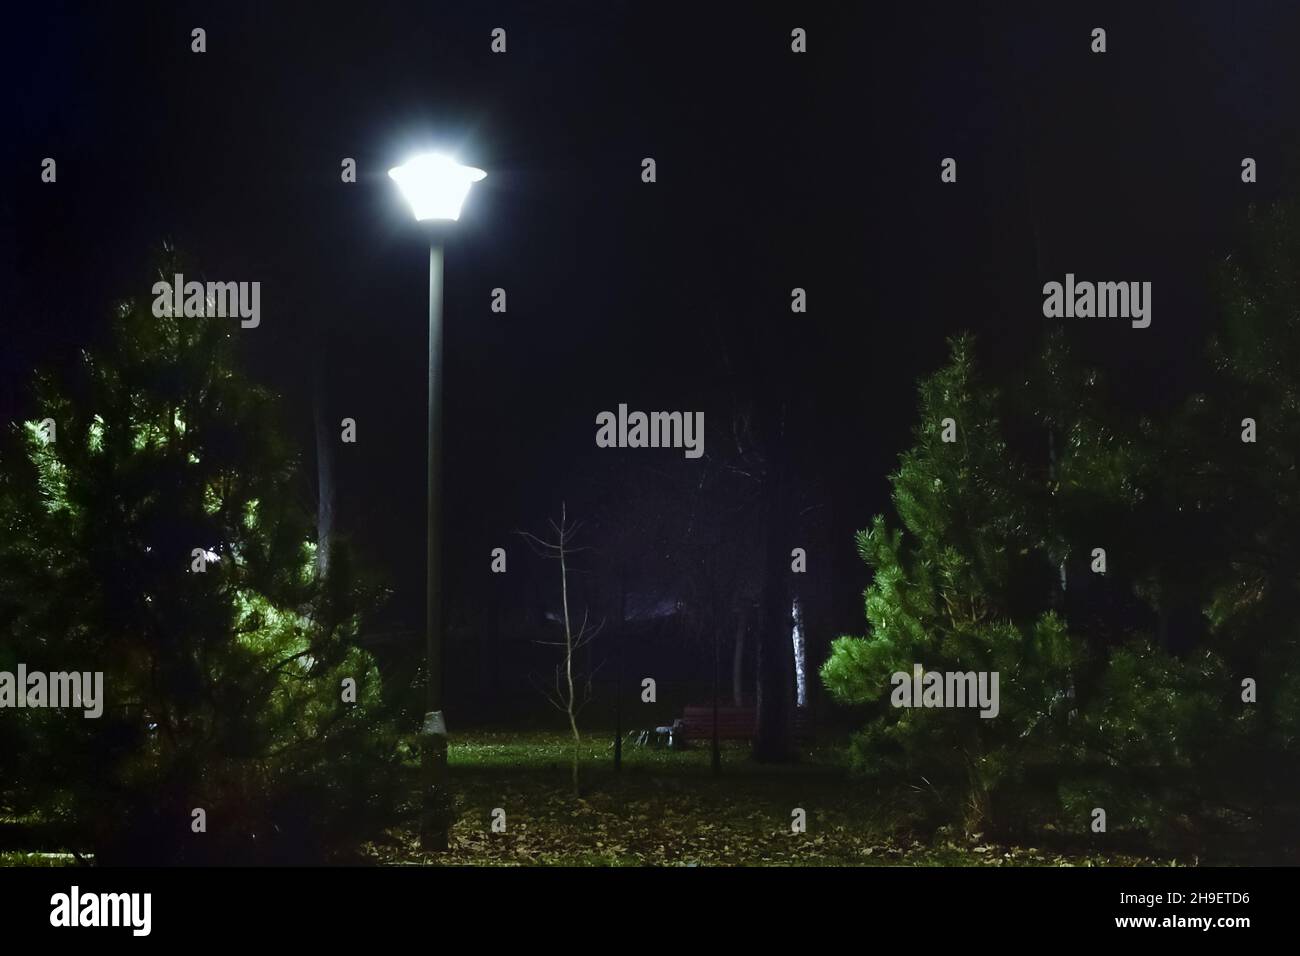 La luce luminosa della lanterna nel parco illumina piccoli pini nel buio di una notte Foto Stock